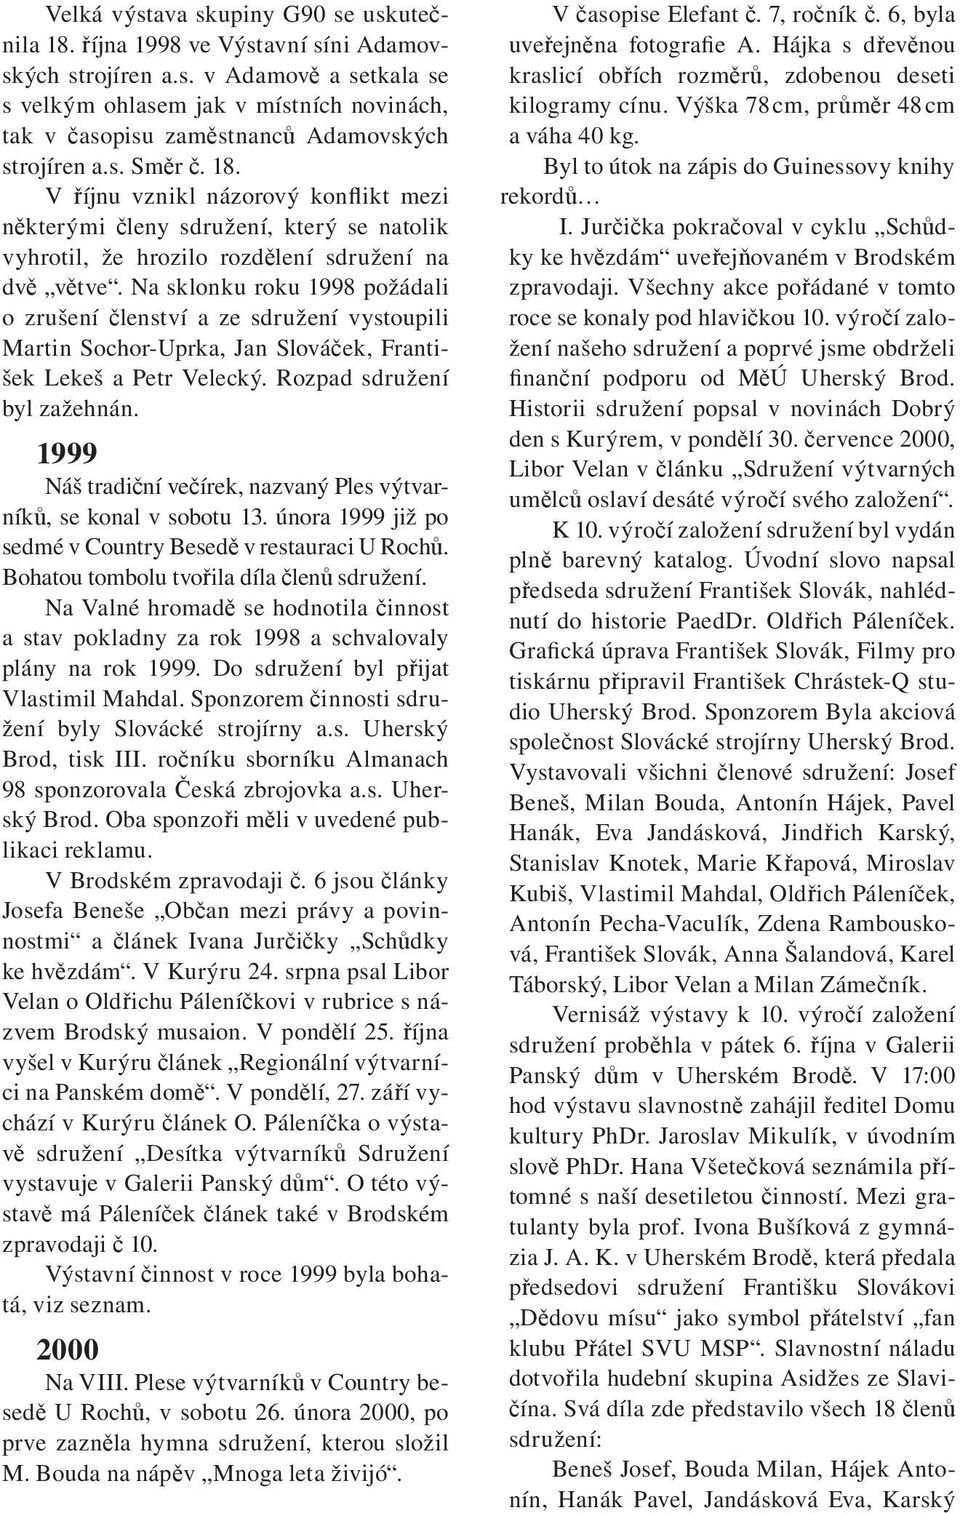 Na sklonku roku 1998 požádali o zrušení členství a ze sdružení vystoupili Martin Sochor-Uprka, Jan Slováček, František Lekeš a Petr Velecký. Rozpad sdružení byl zažehnán.